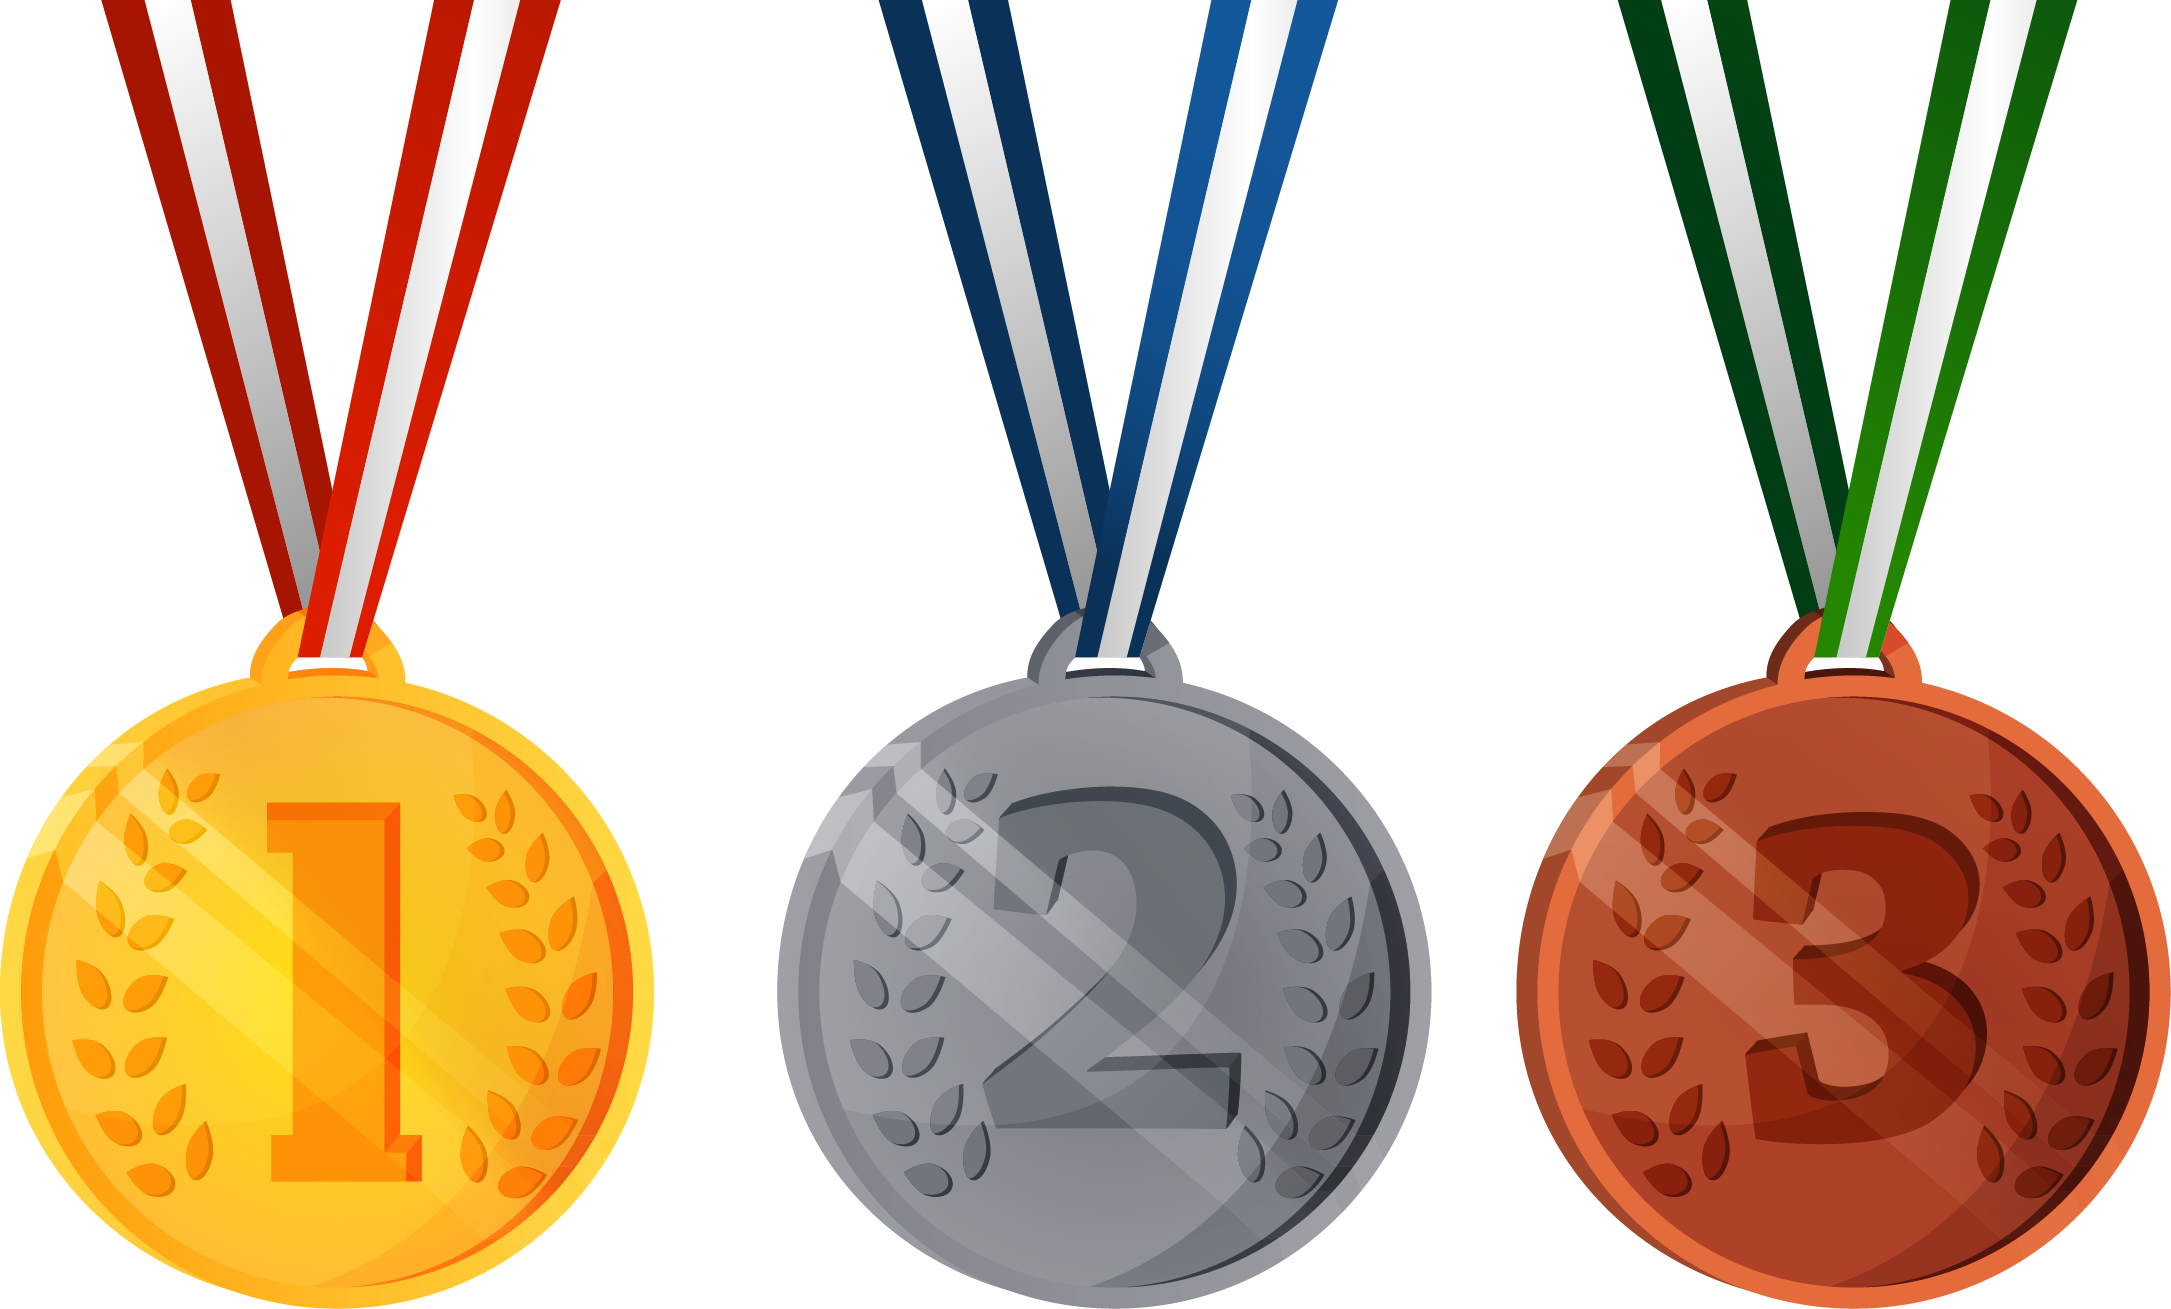 Gold Medal Award Clip Art - Diploma De Premiação Menção Honrosa Obmep 2017.